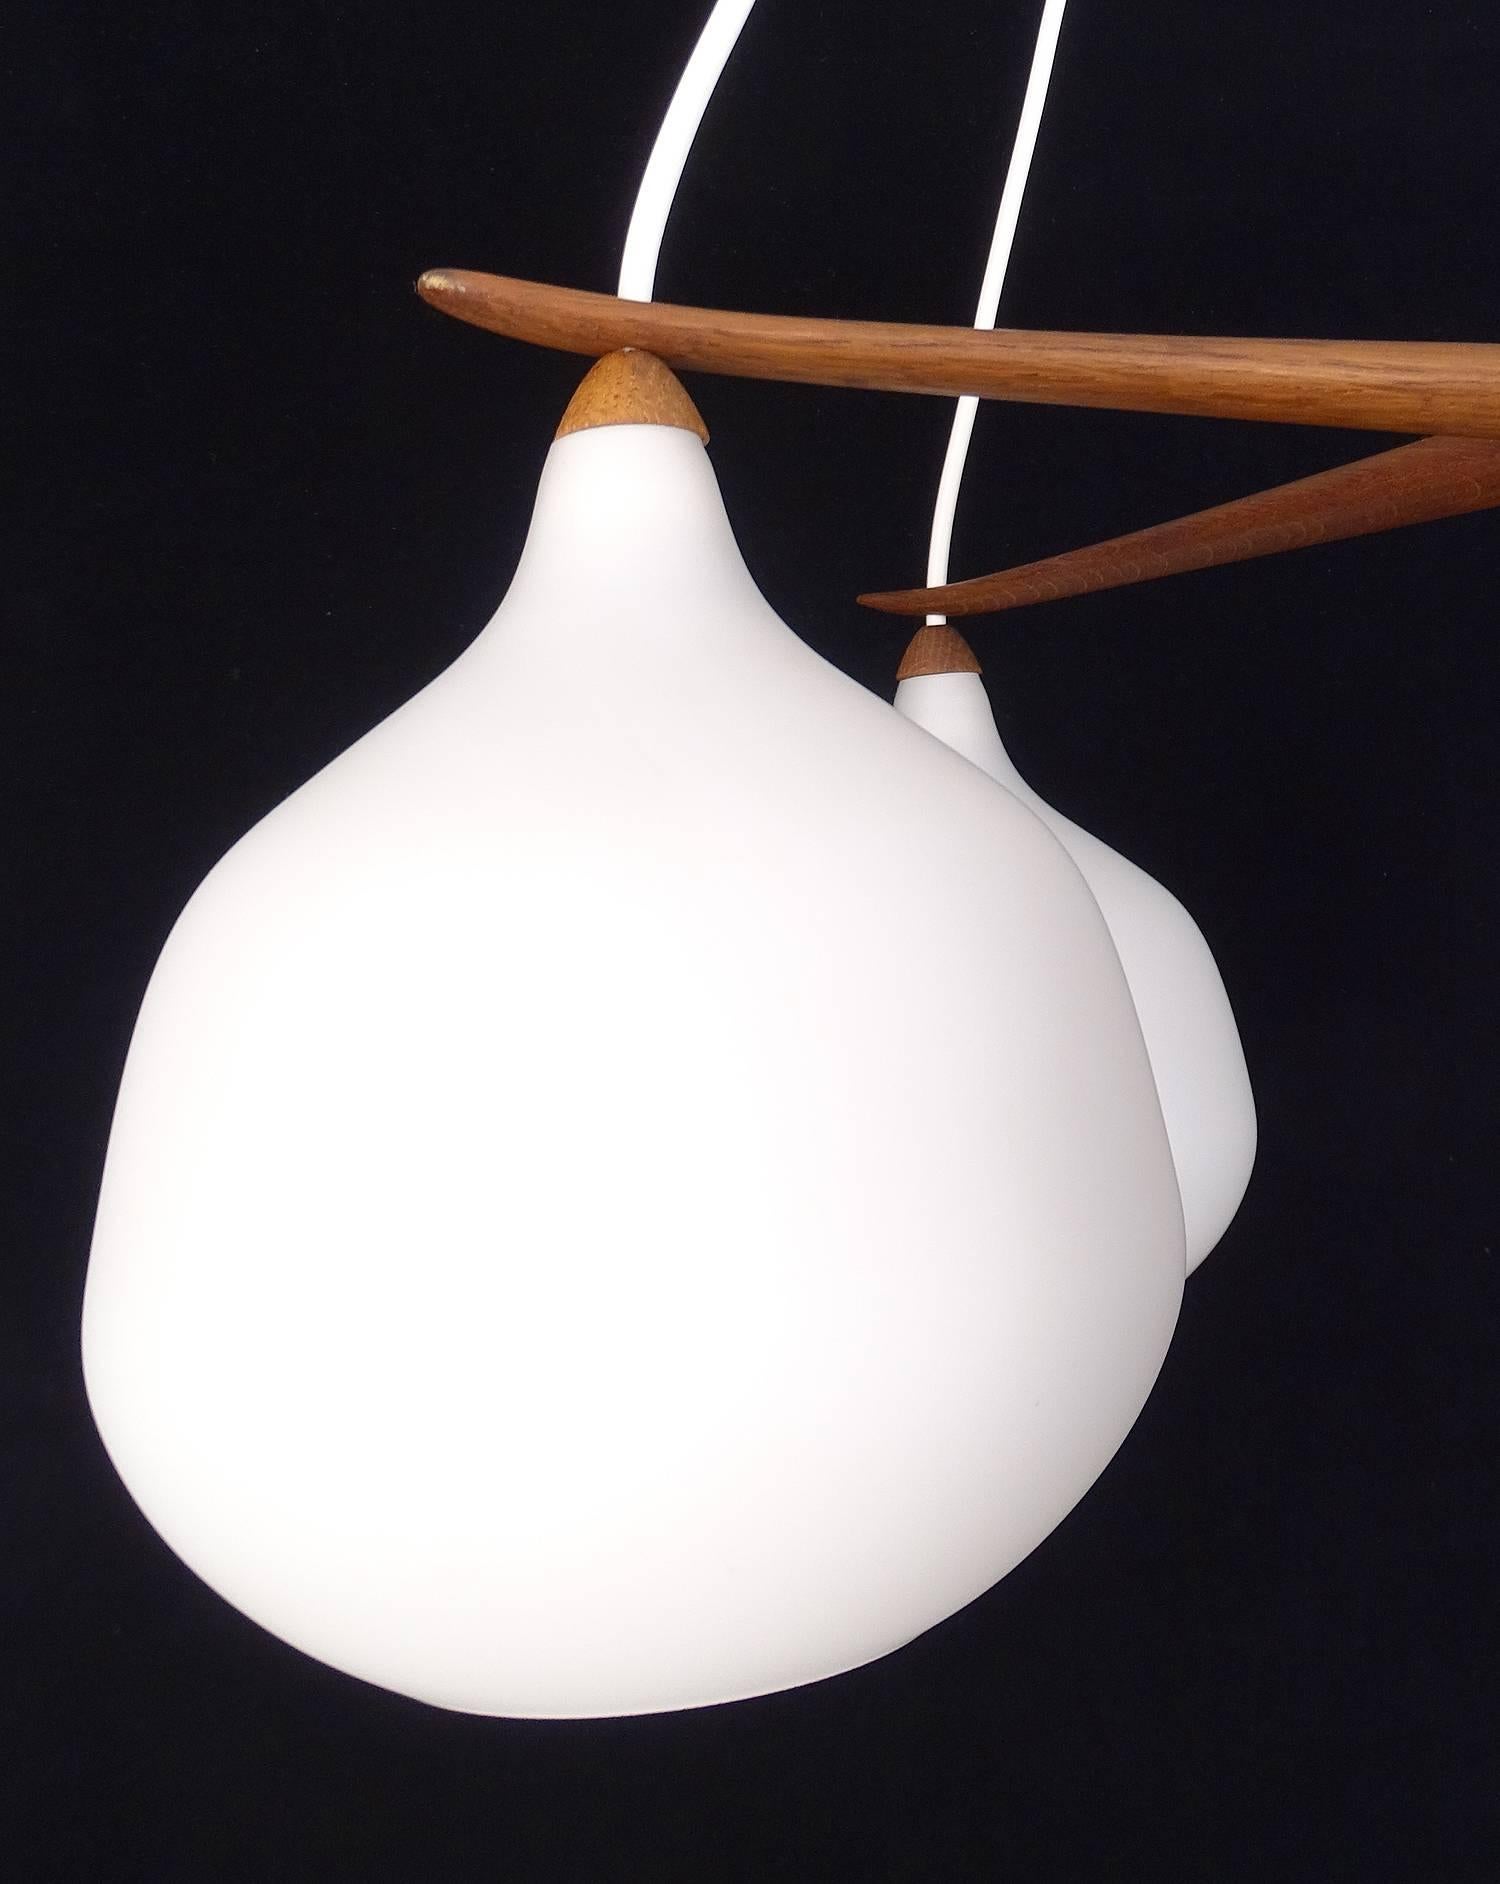  Luxus Chandelier by Uno & Osten Kristiansson Glass Globes Lamp Danish Modern 3